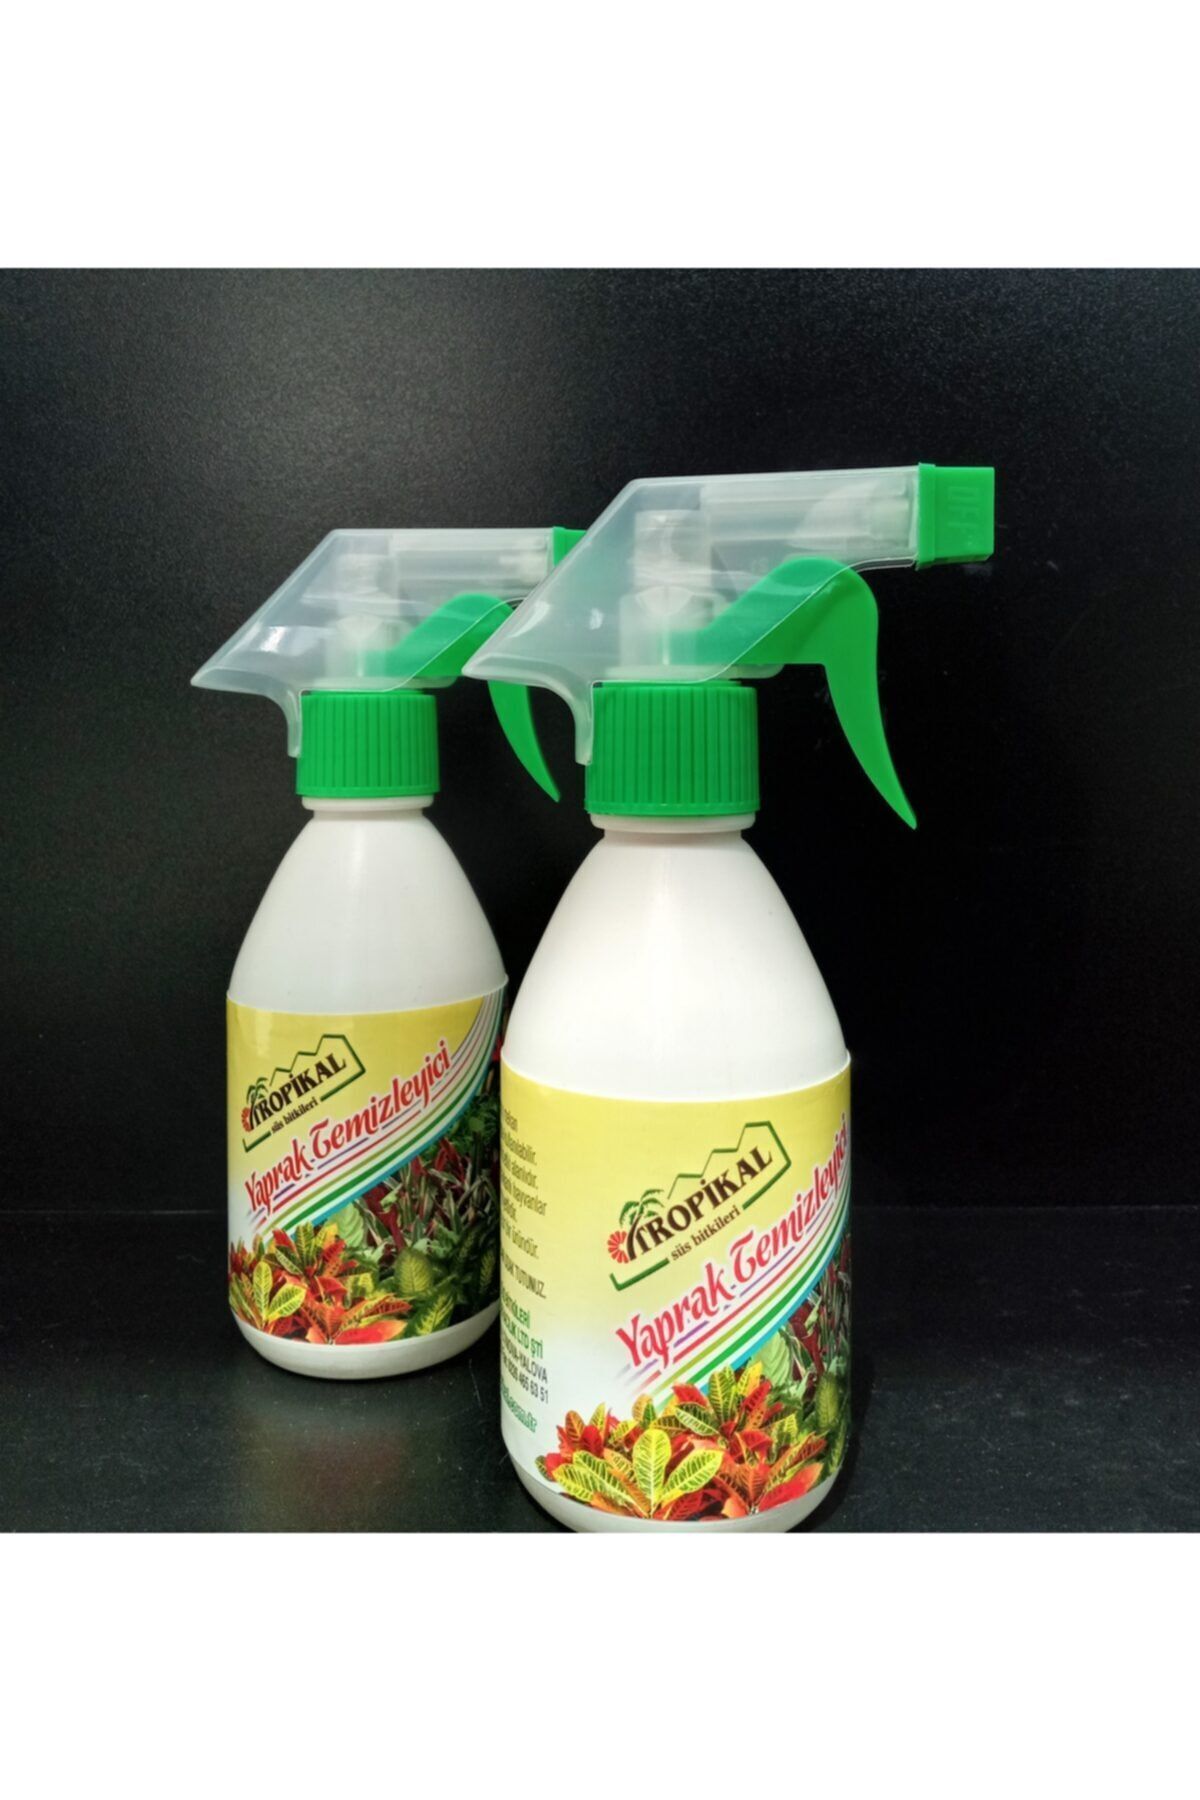 TROPİKAL Yaprak Temizleyici 2 Adet 250 ml Kokusuz Temizleyici Böceklere Karşı Etkili Yaprak Temizleyici